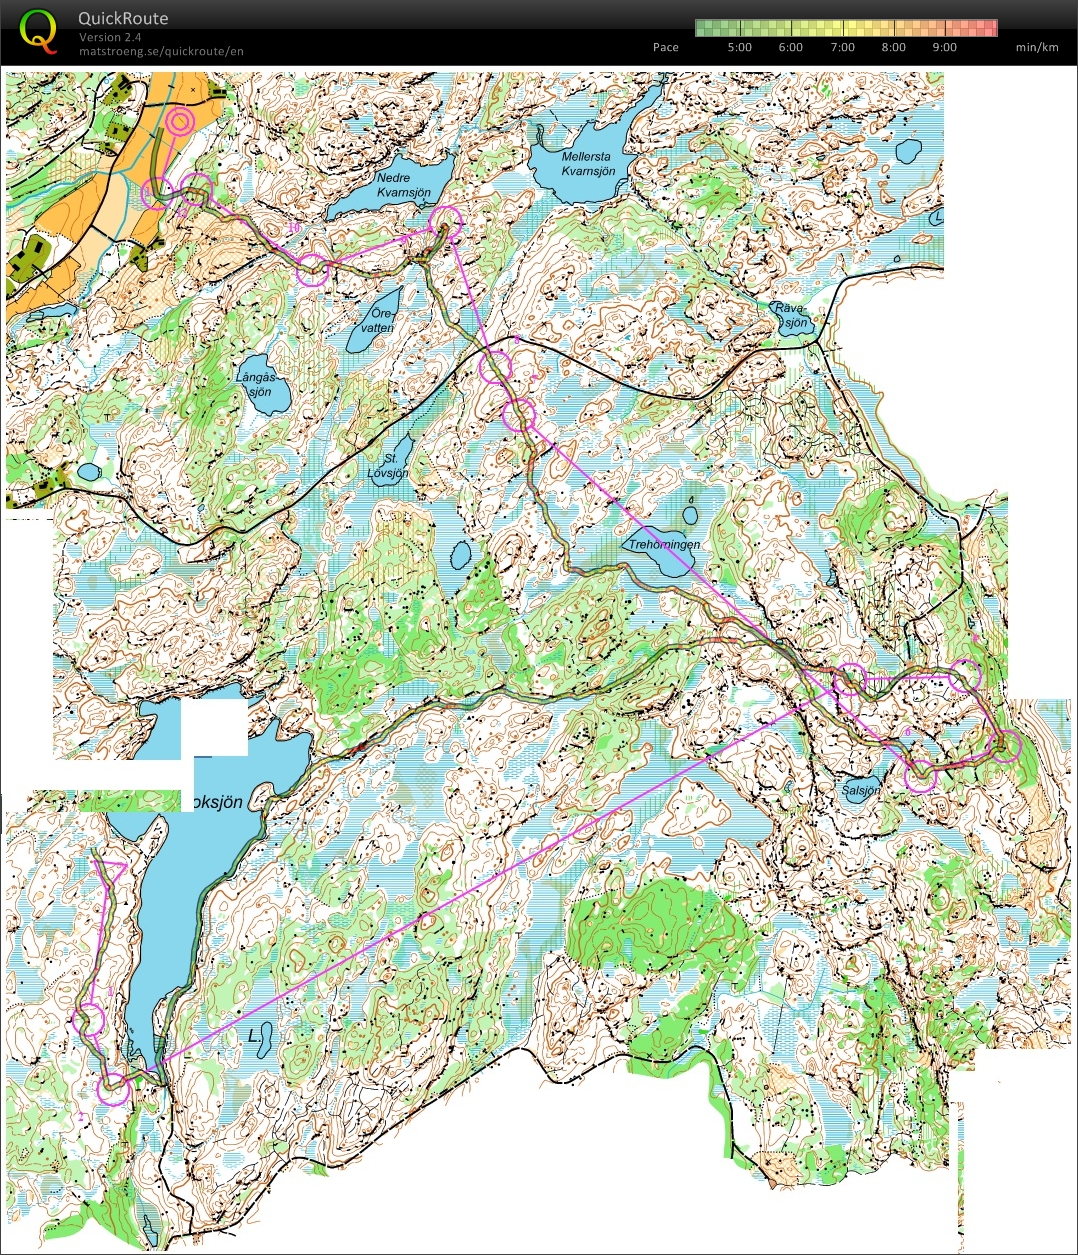 SM Lång kval (2013-09-21)